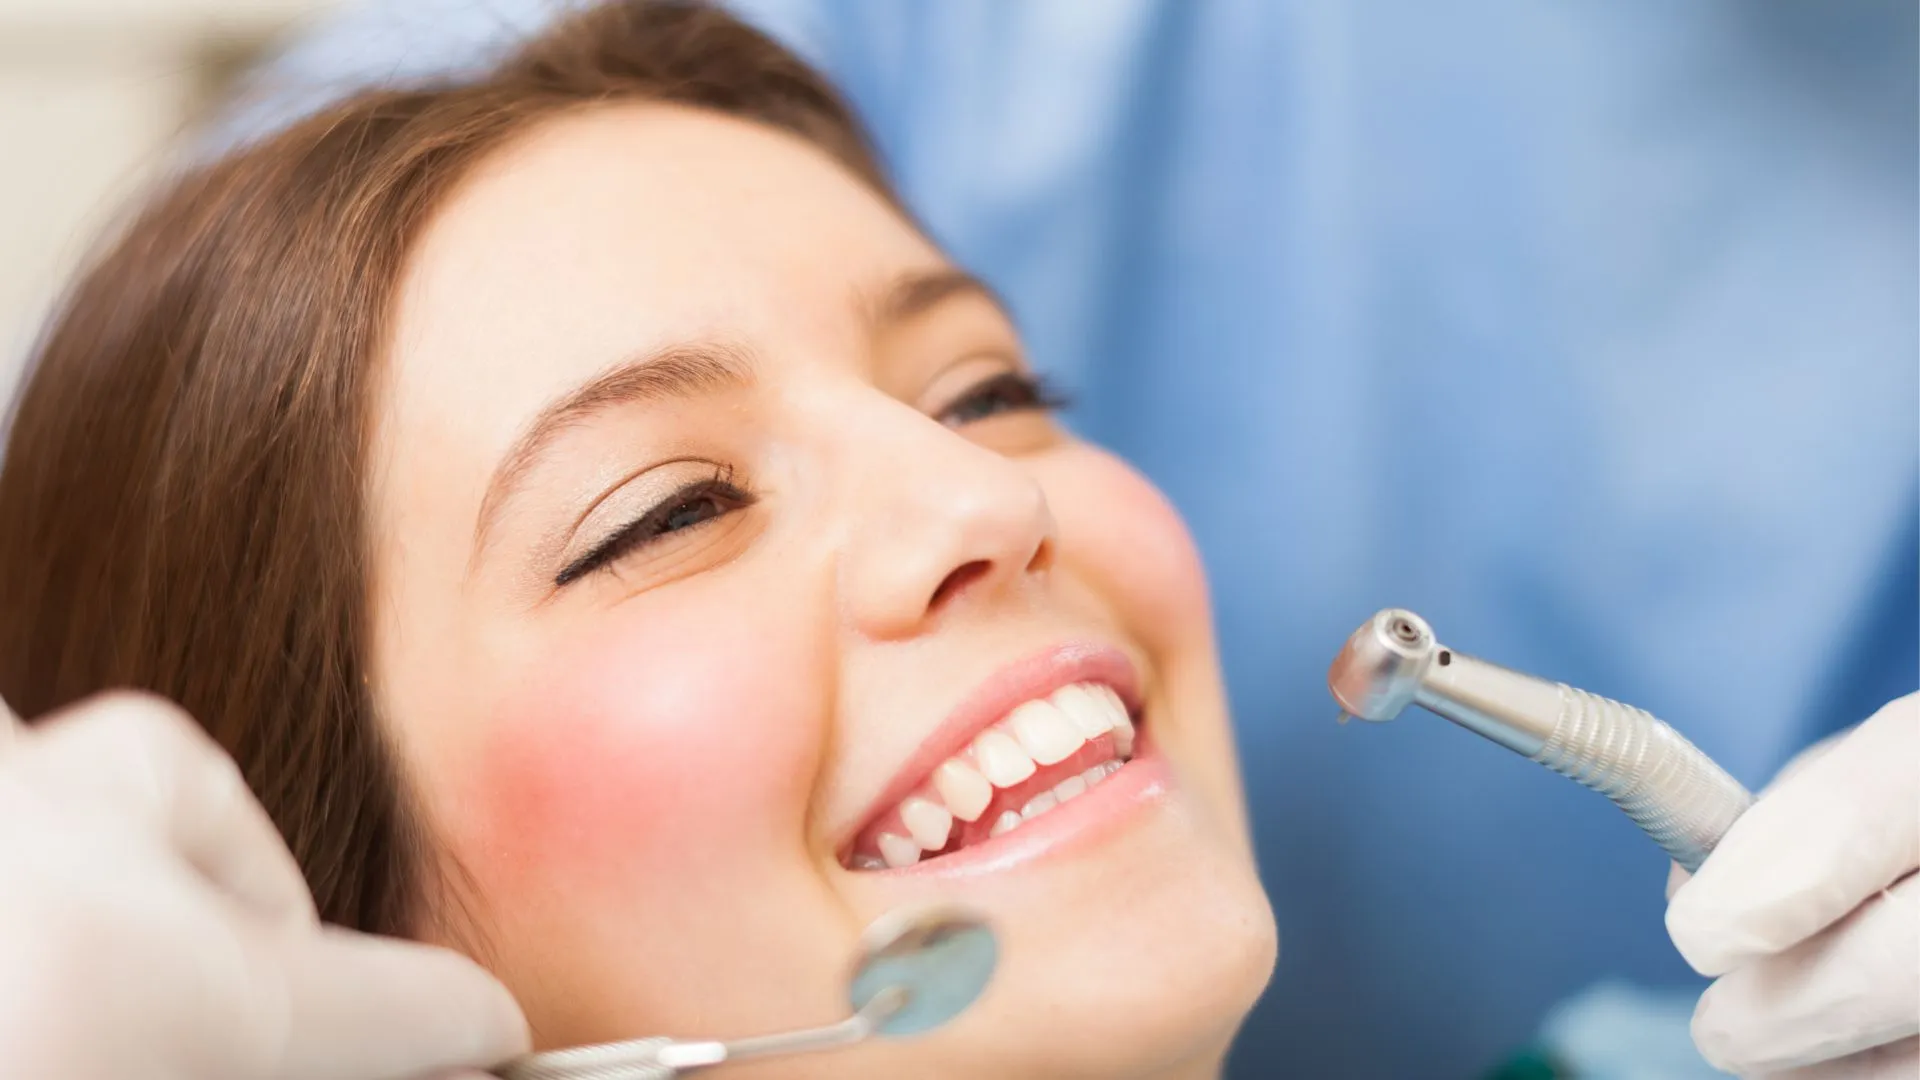 آیا کامپوزیت دندان را خراب می کند؟